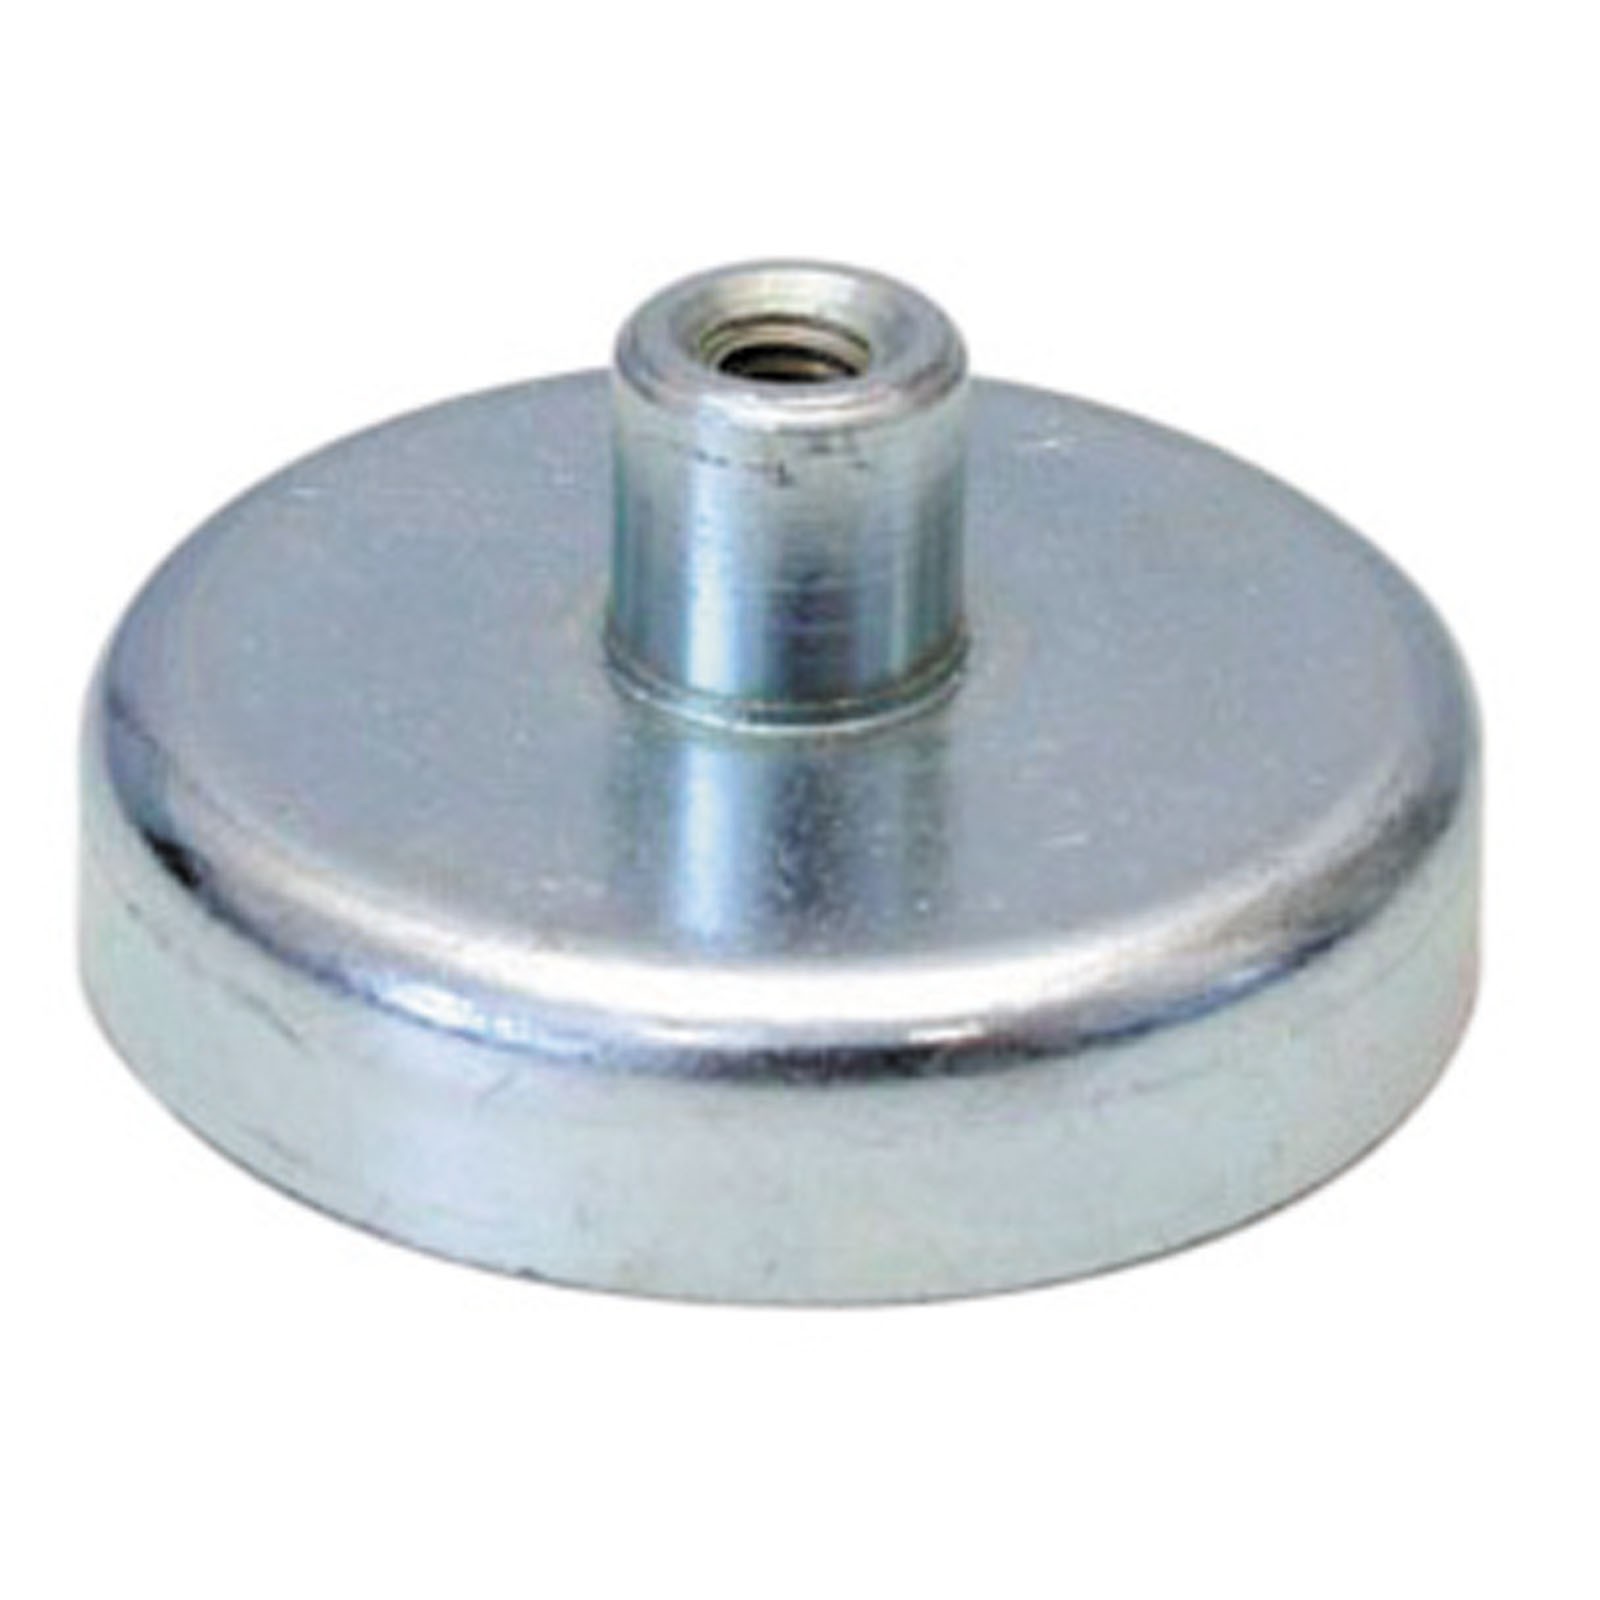 Flachgreifer Magnet mit Gewinde - Magnetfuß, Topfmagnet - div. Größen 10 - 125mm Größe:32.0 mm von Rimag